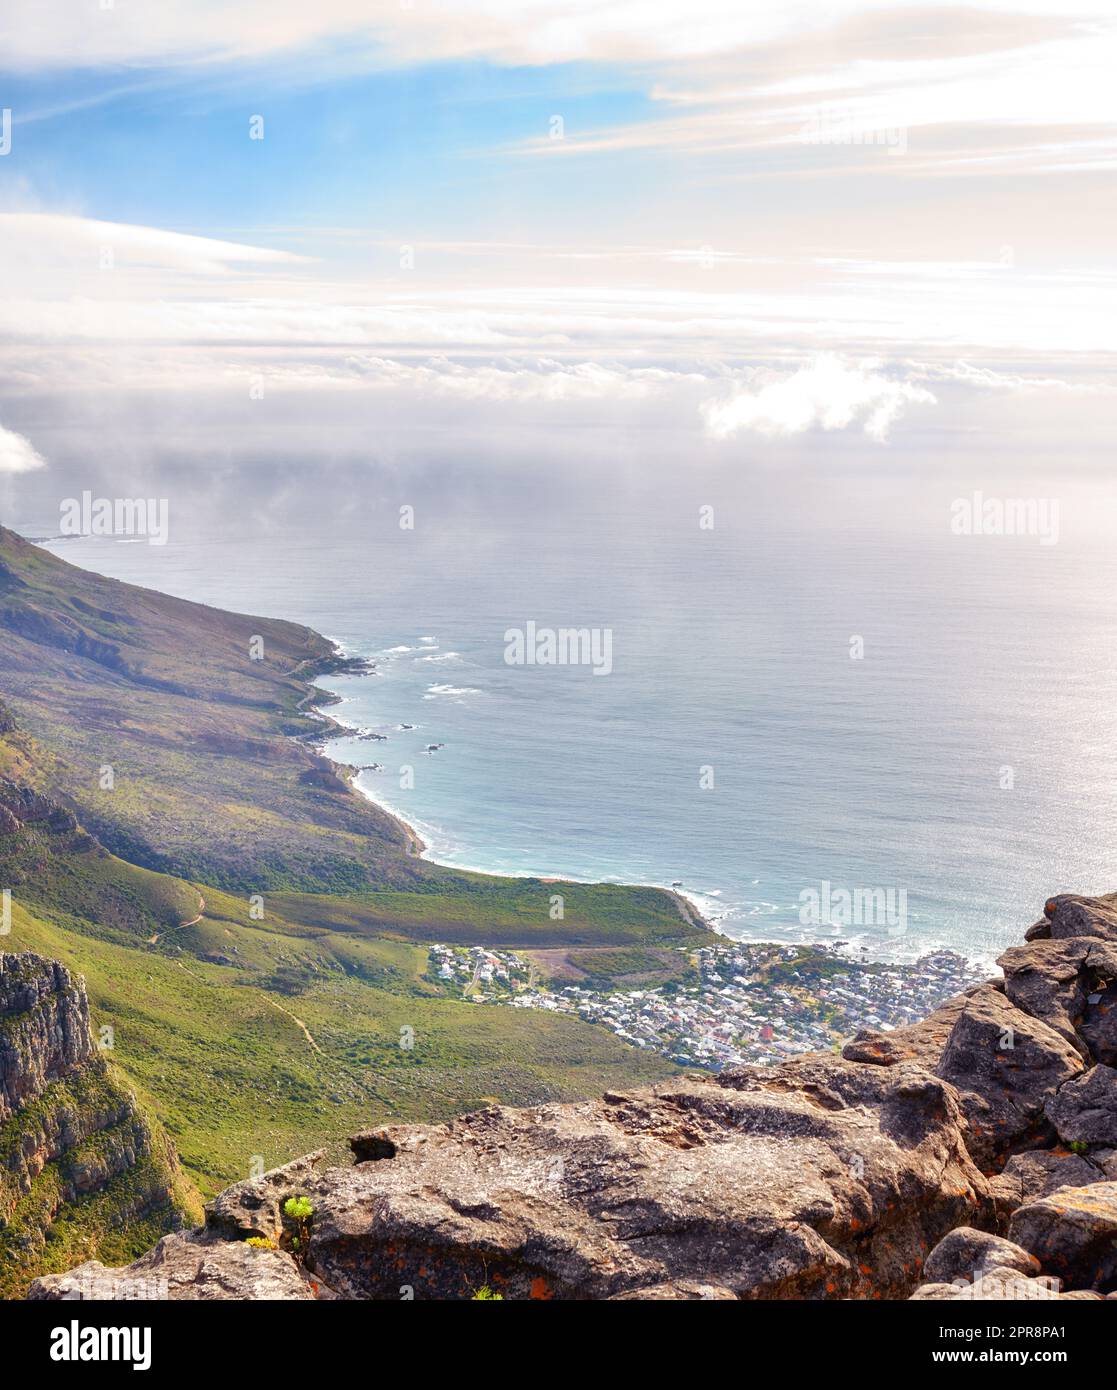 Landschaft des Lions Head Berges mit Häusern, Ozean und bewölktem Himmel mit Kopierraum. Ausblick auf grüne Berge mit viel Vegetation und Blick auf eine Stadt in Kapstadt, Südafrika Stockfoto